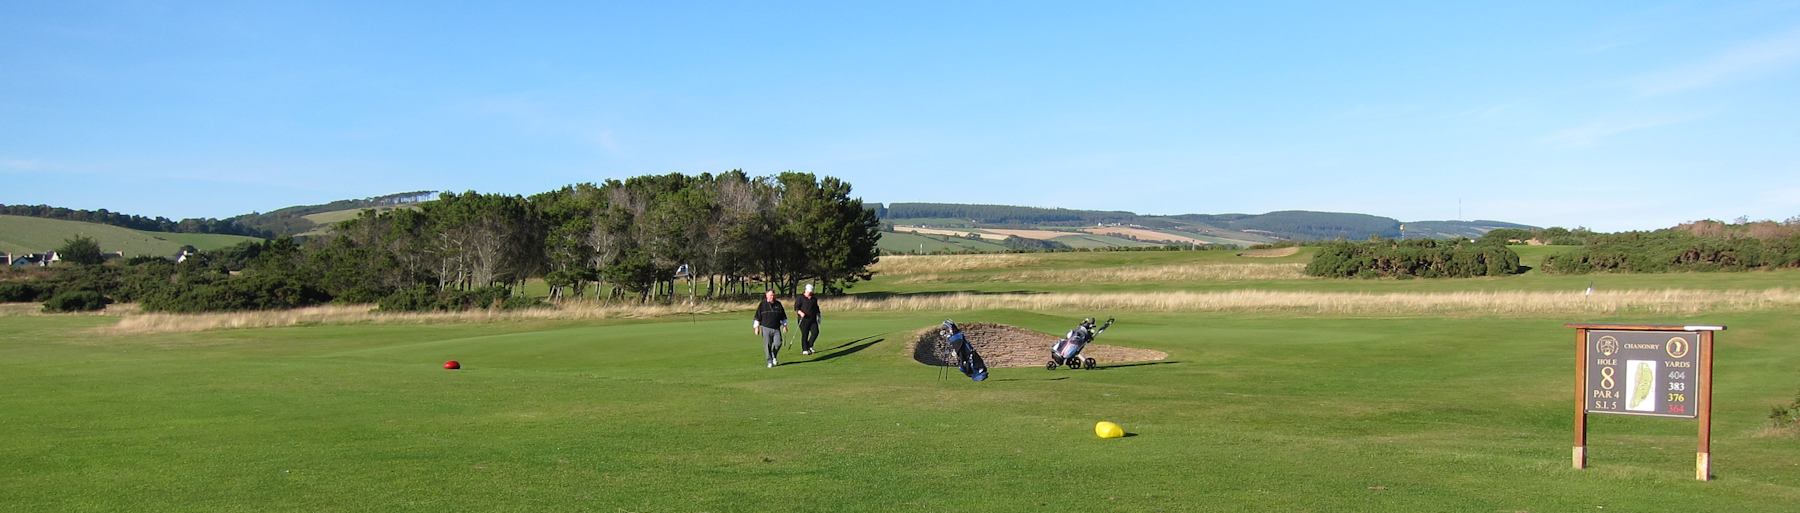 Fortrose golf course, Scottish Highlands